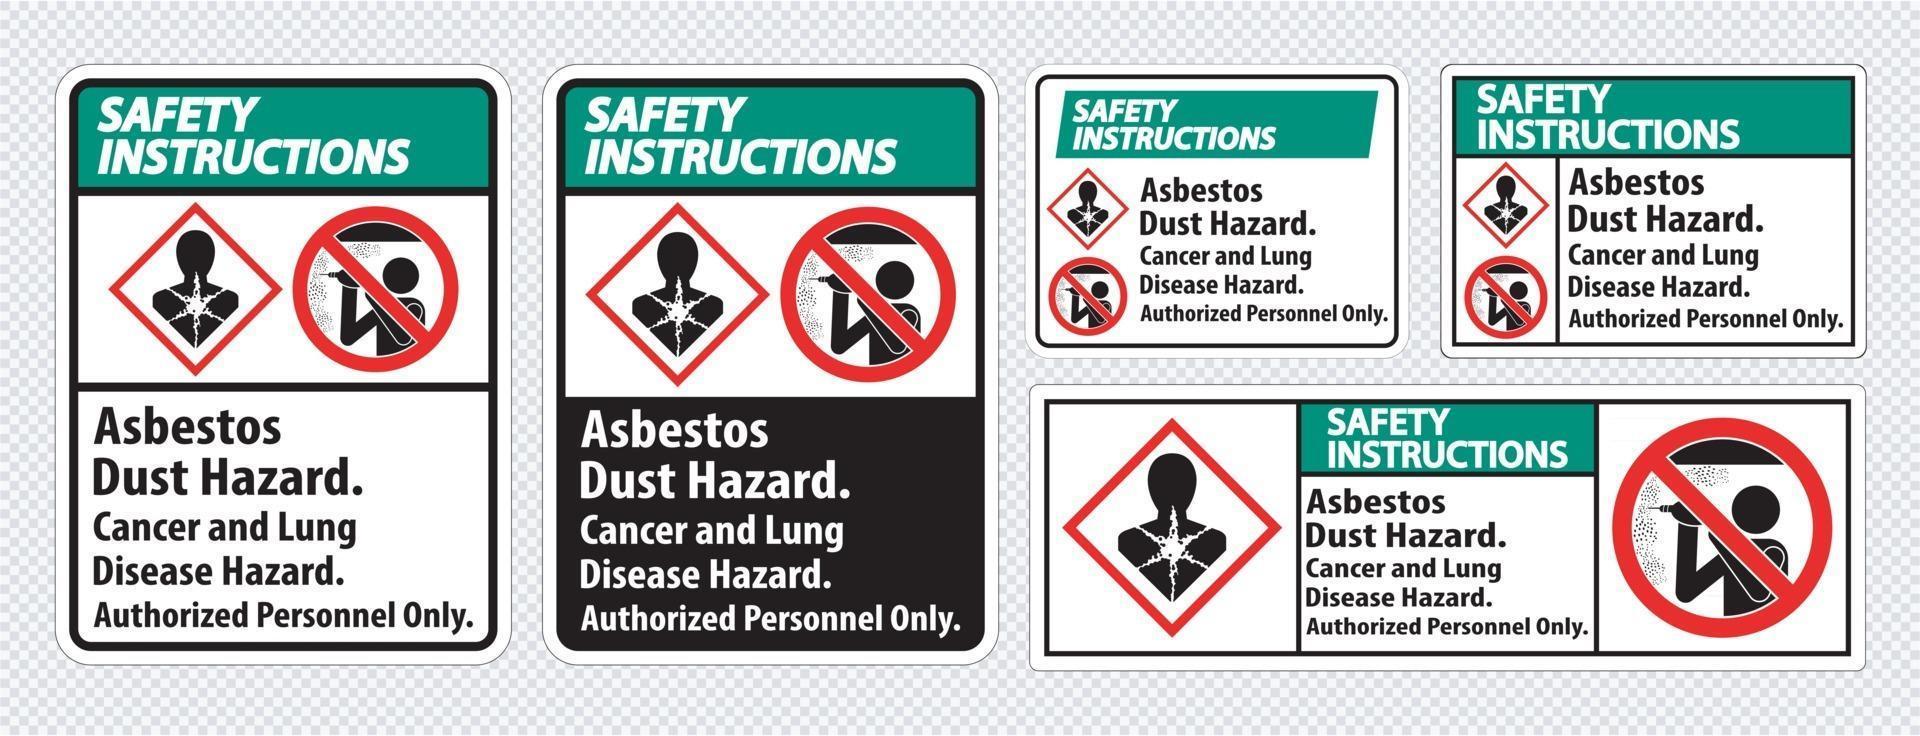 etiqueta de instrucciones de seguridad peligro de polvo de amianto peligro de cáncer y enfermedades pulmonares solo personal autorizado vector